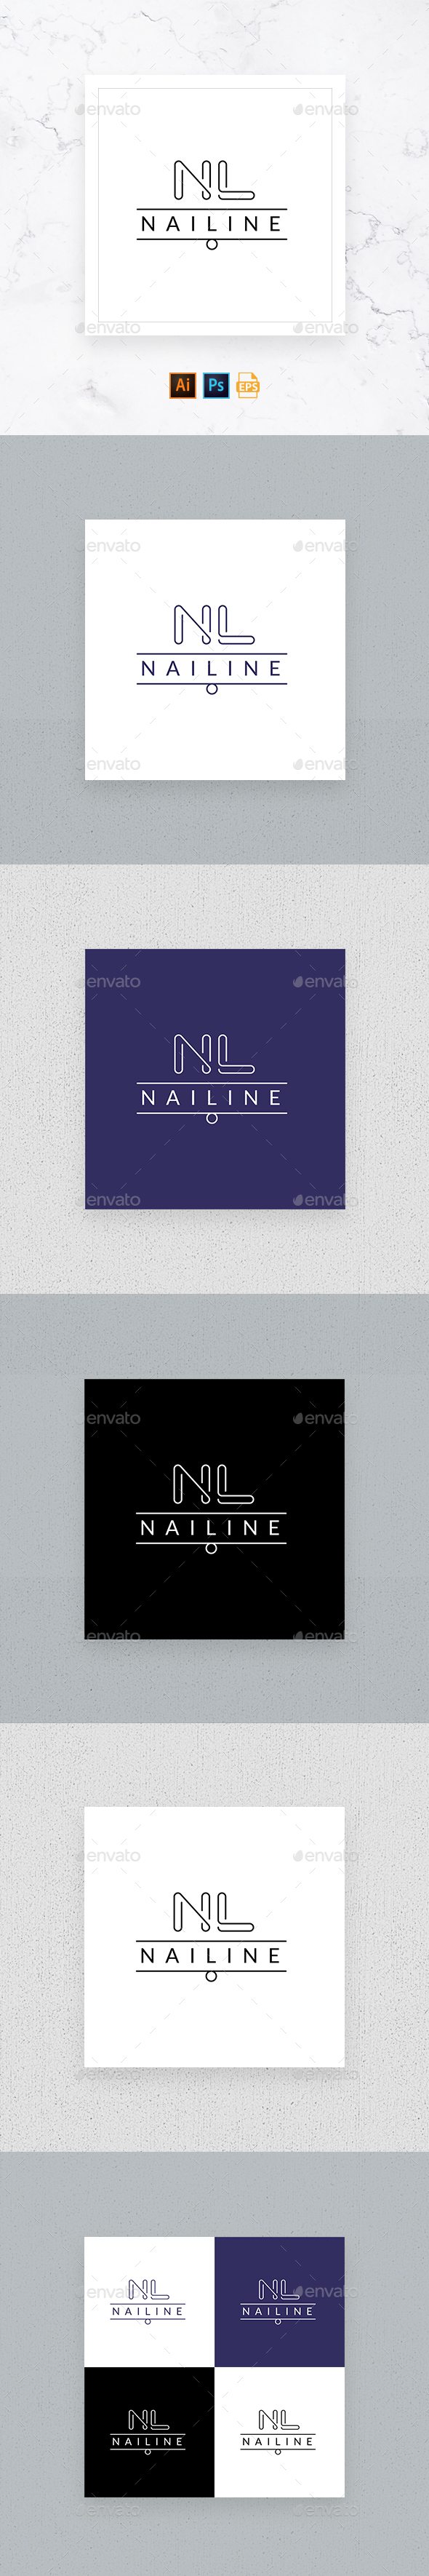 Nail Studio Shop Logo